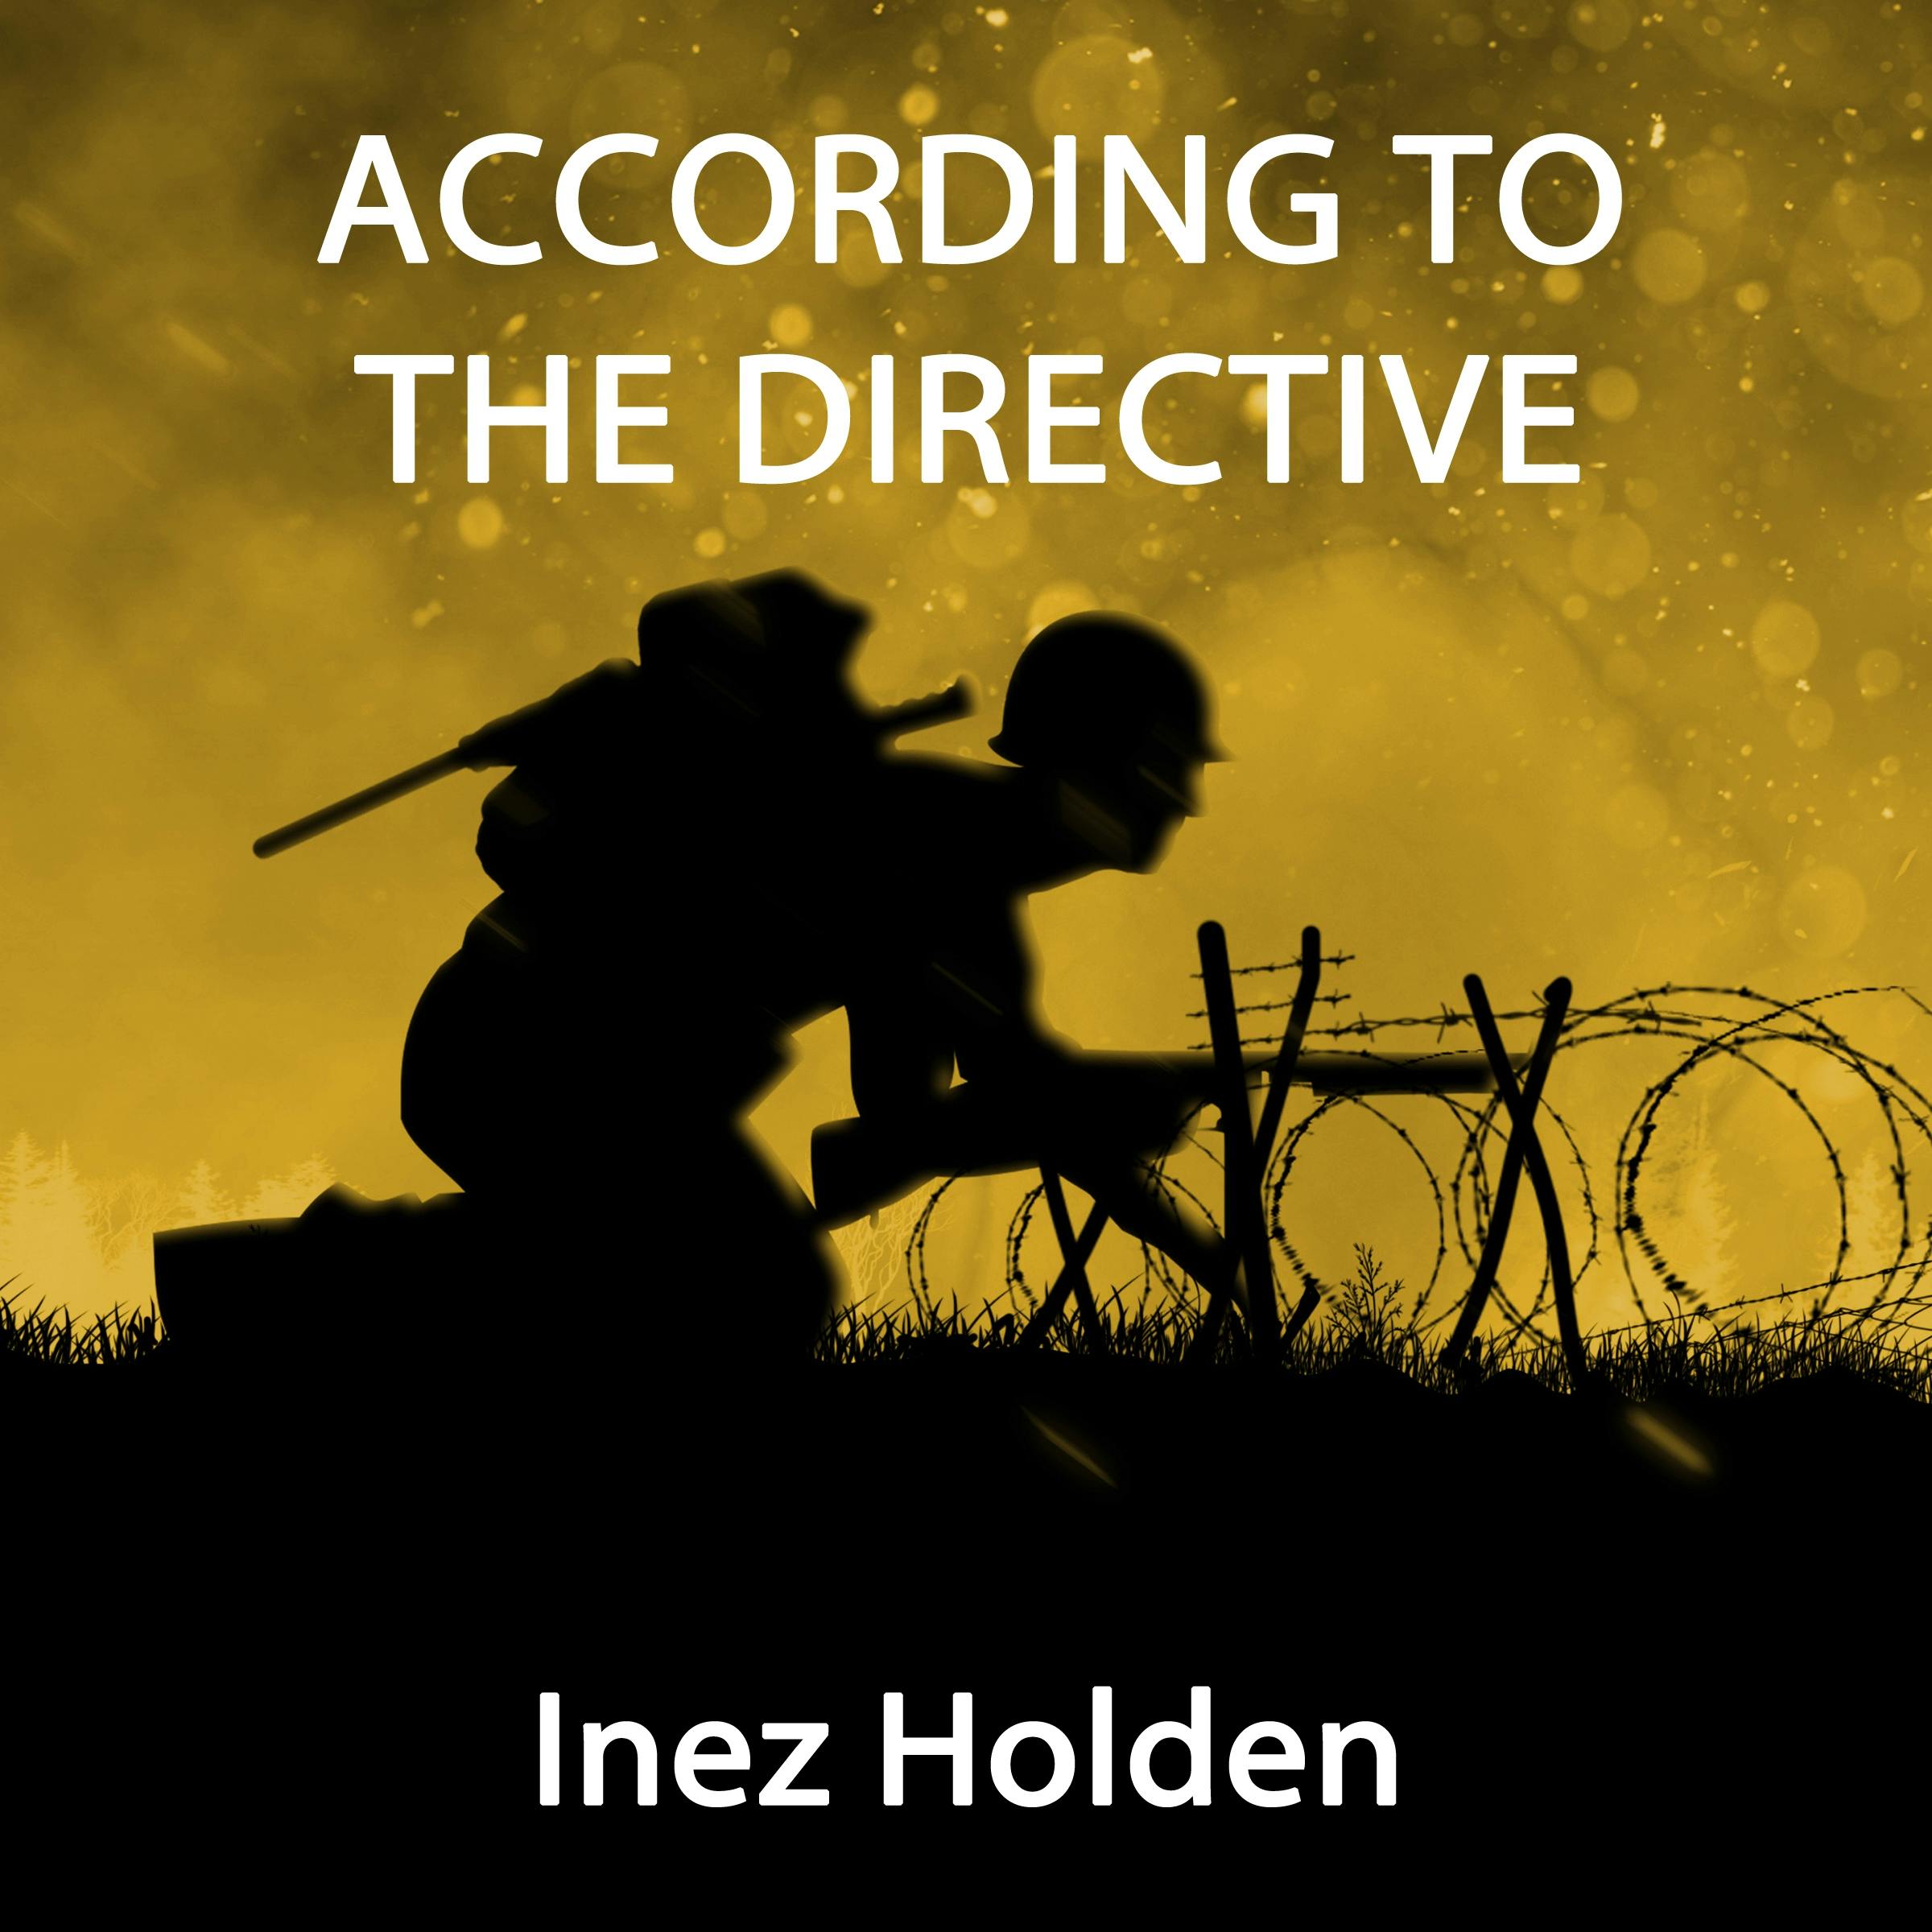 According to the Directive - Inez Holden